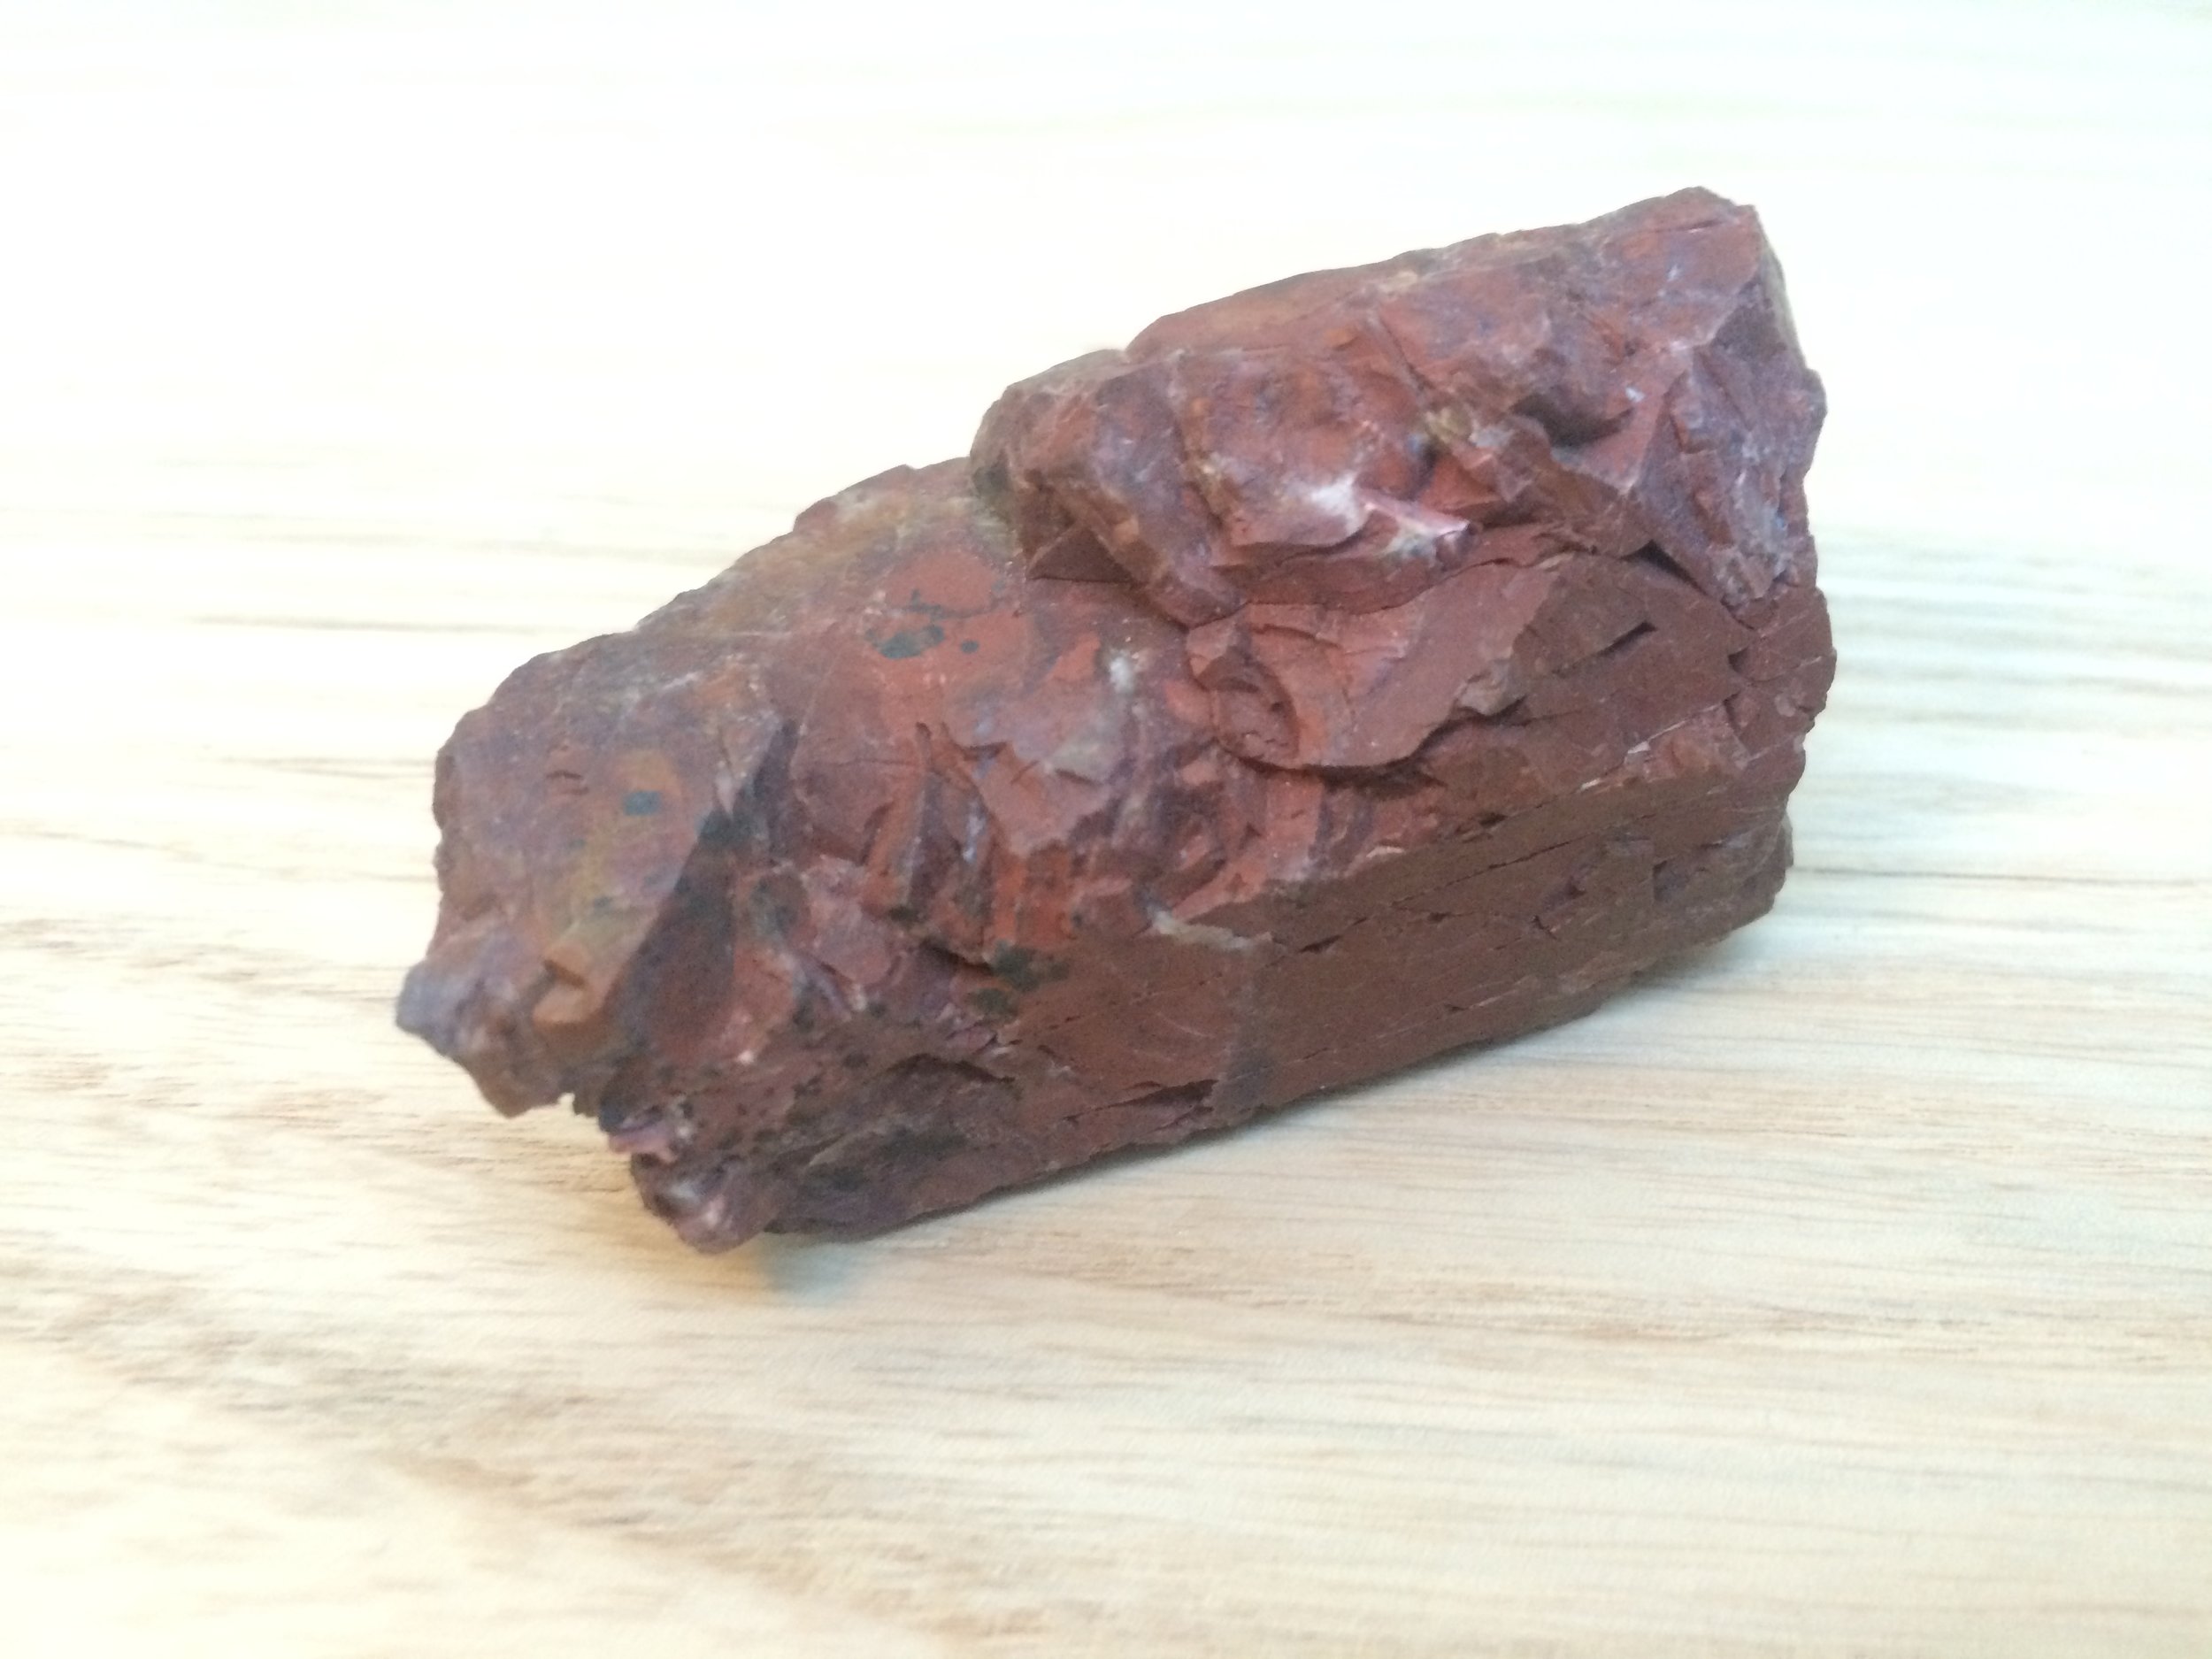  Red chert found in the Marin Headlands, CA 